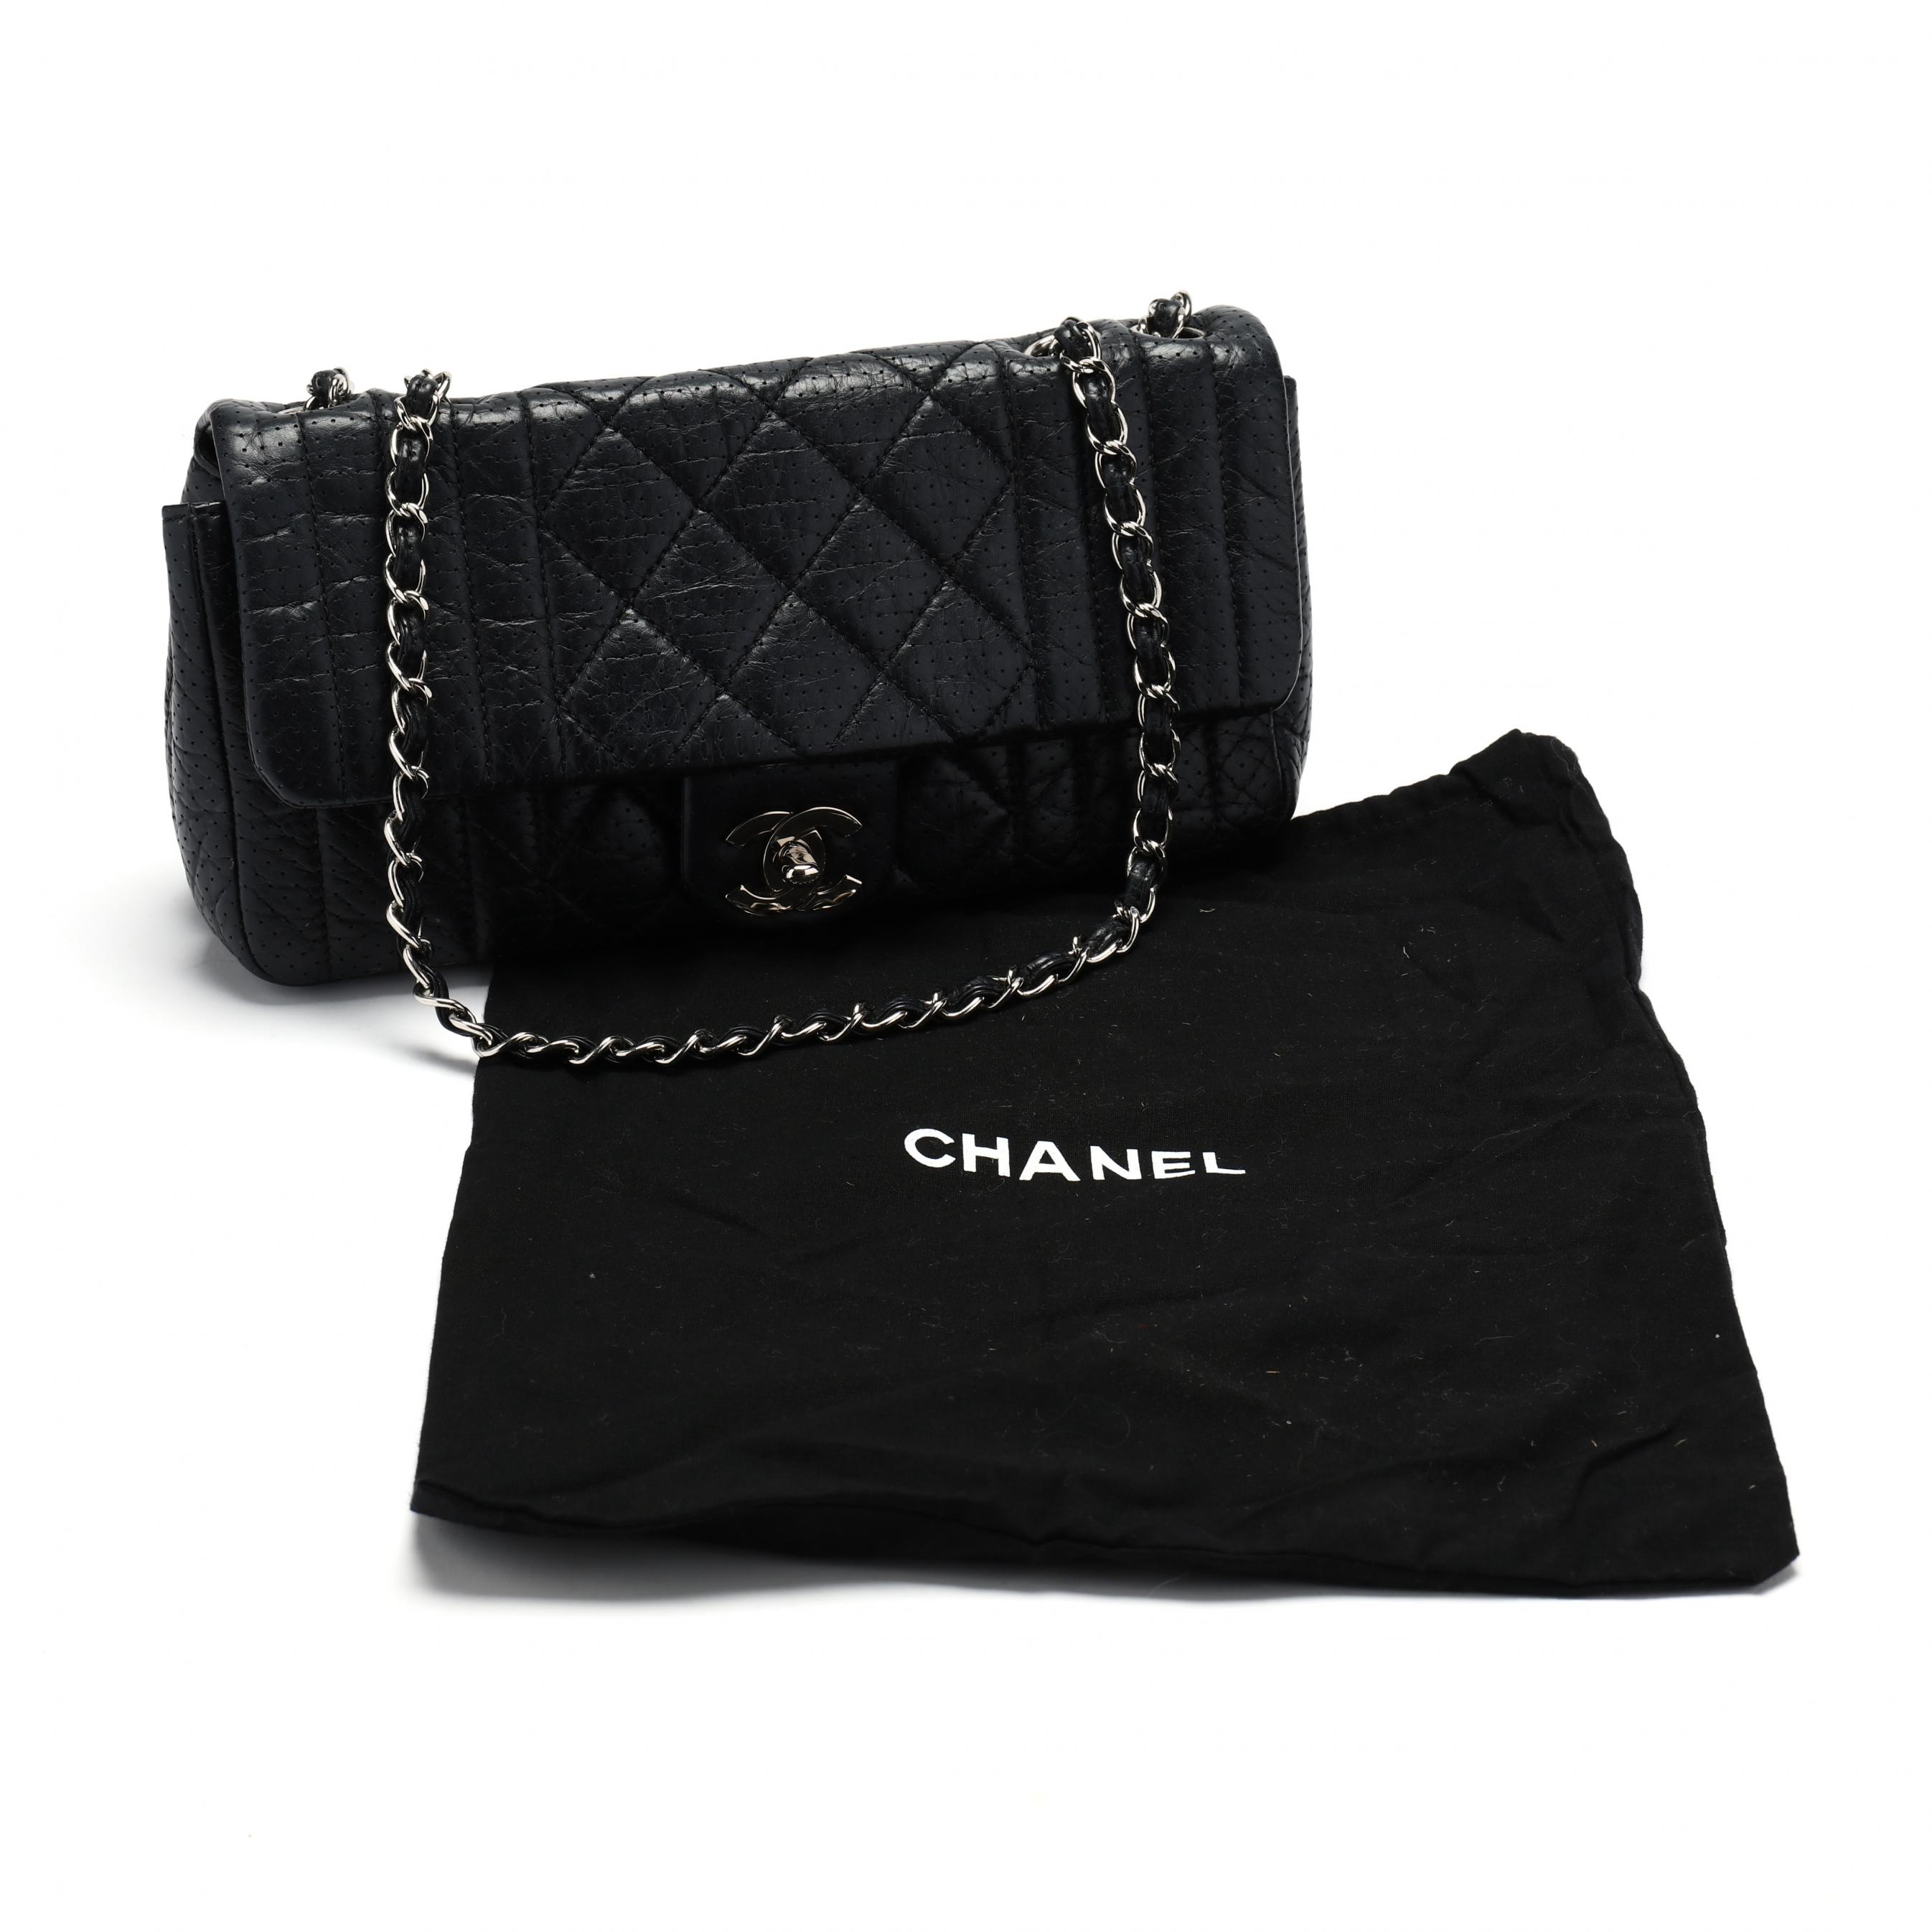 chanel classic flap bag inside